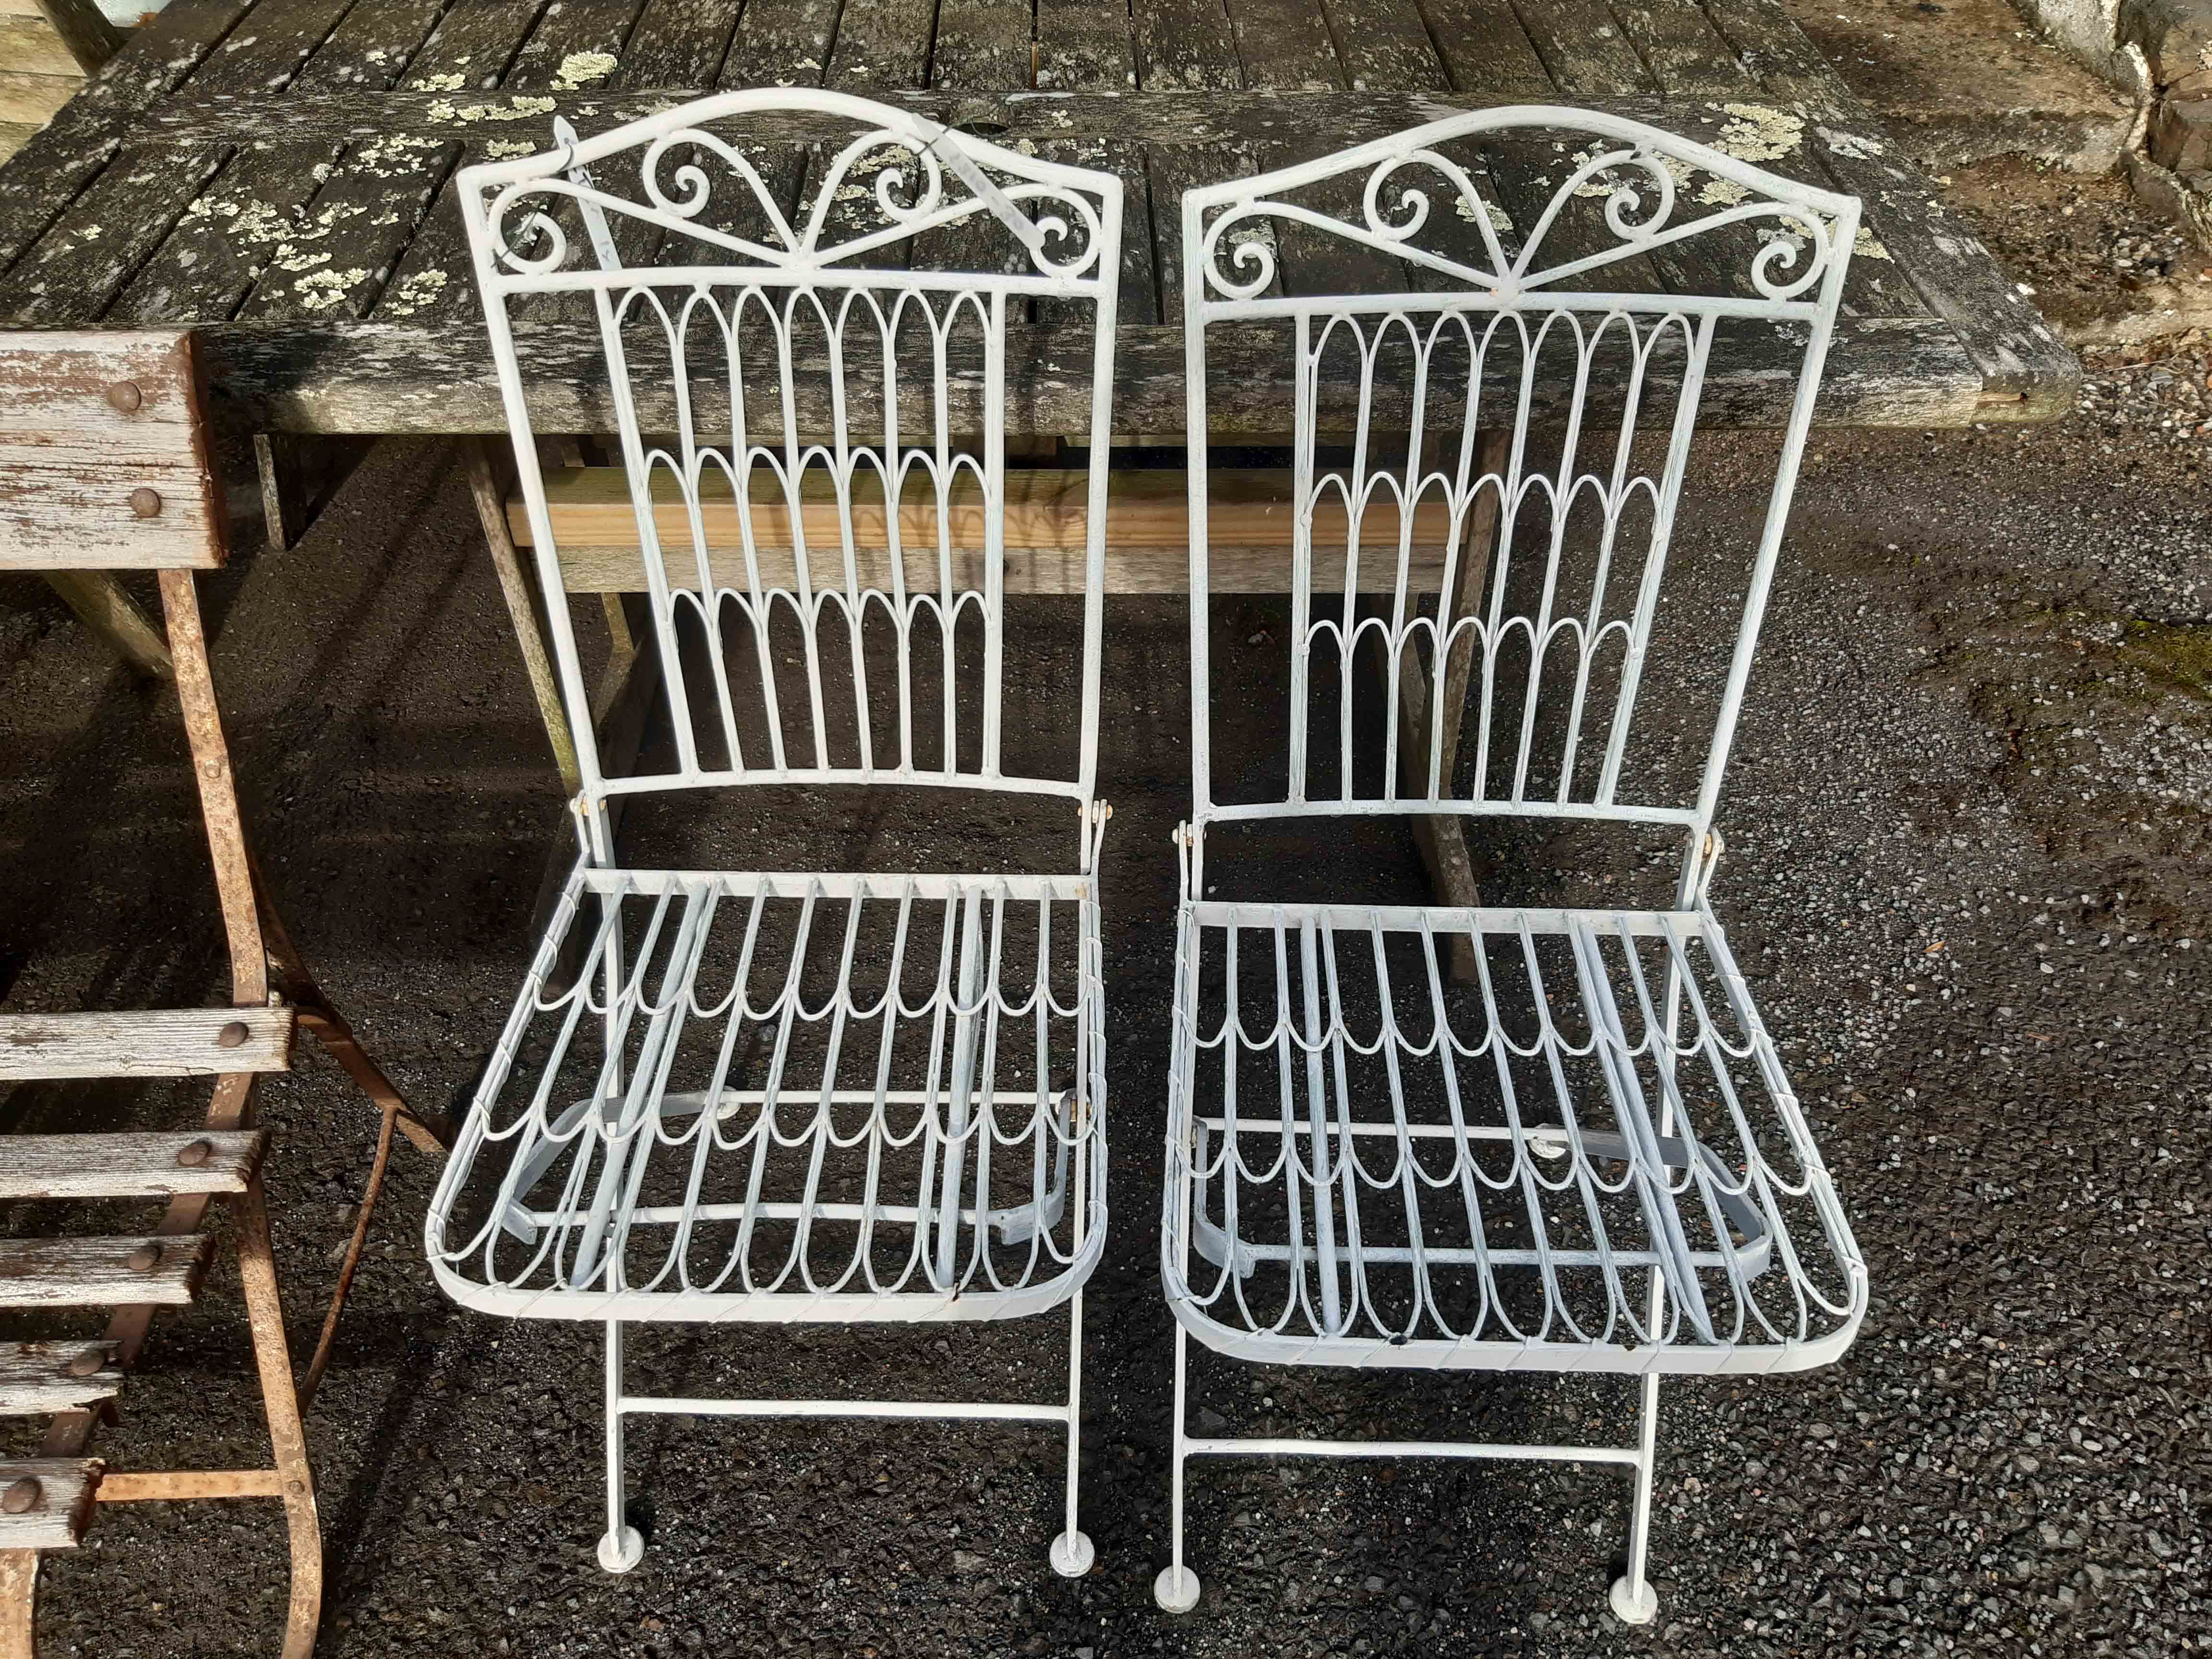 A pair of modern folding garden chairs